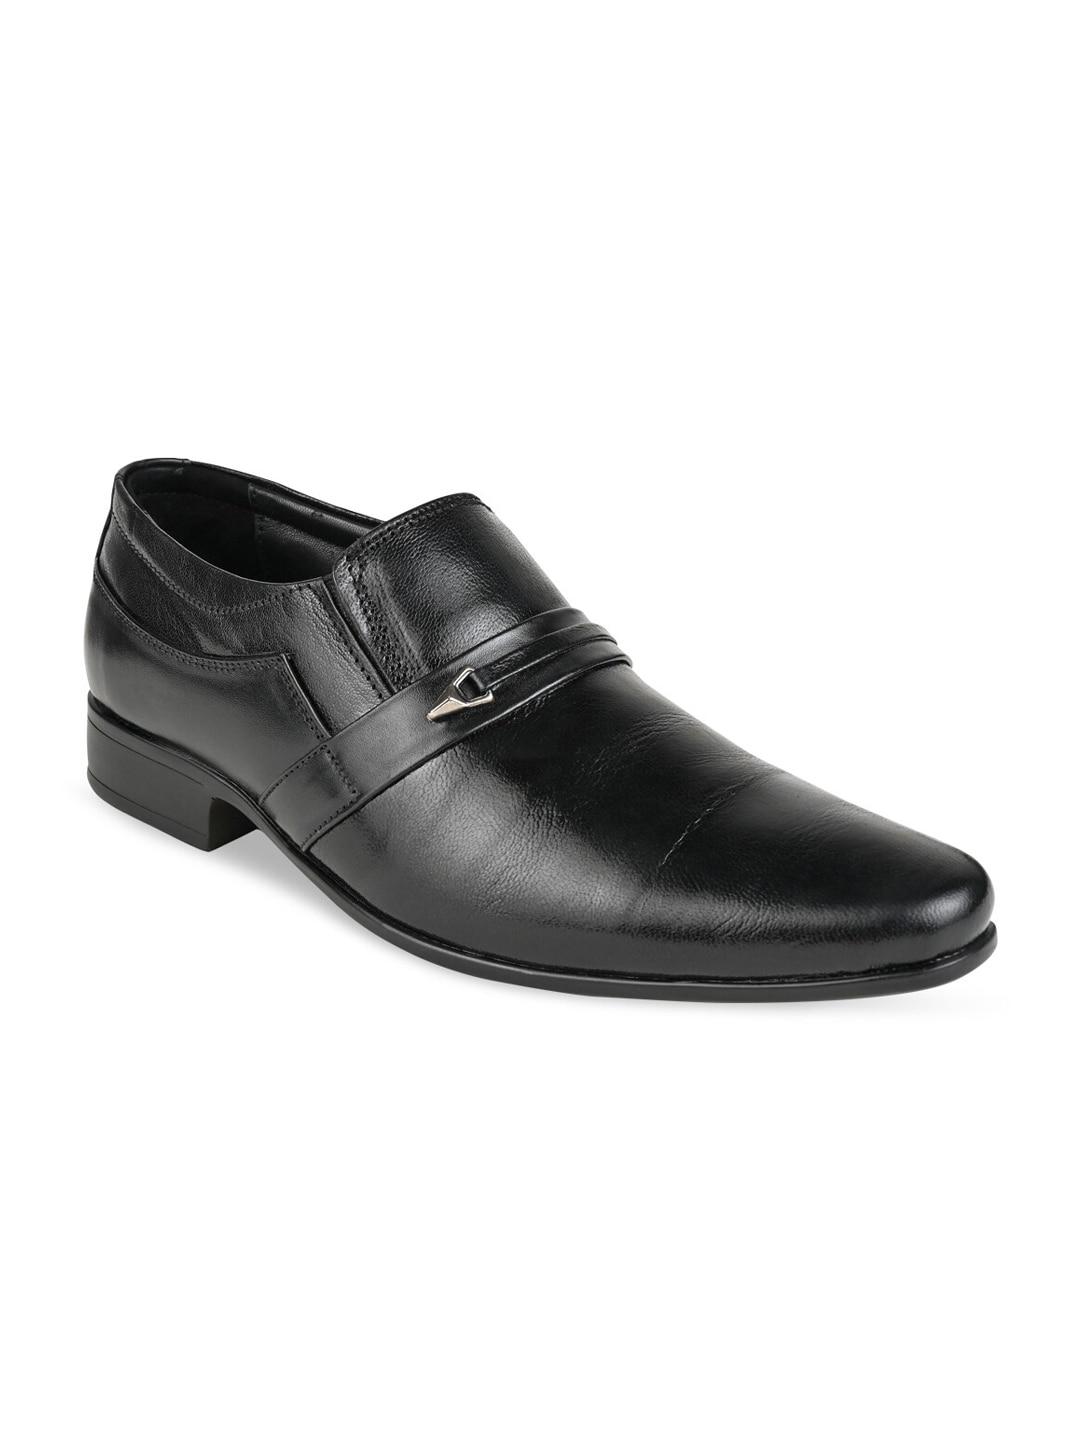 Regal Men Black Solid Formal Slip-On Shoes